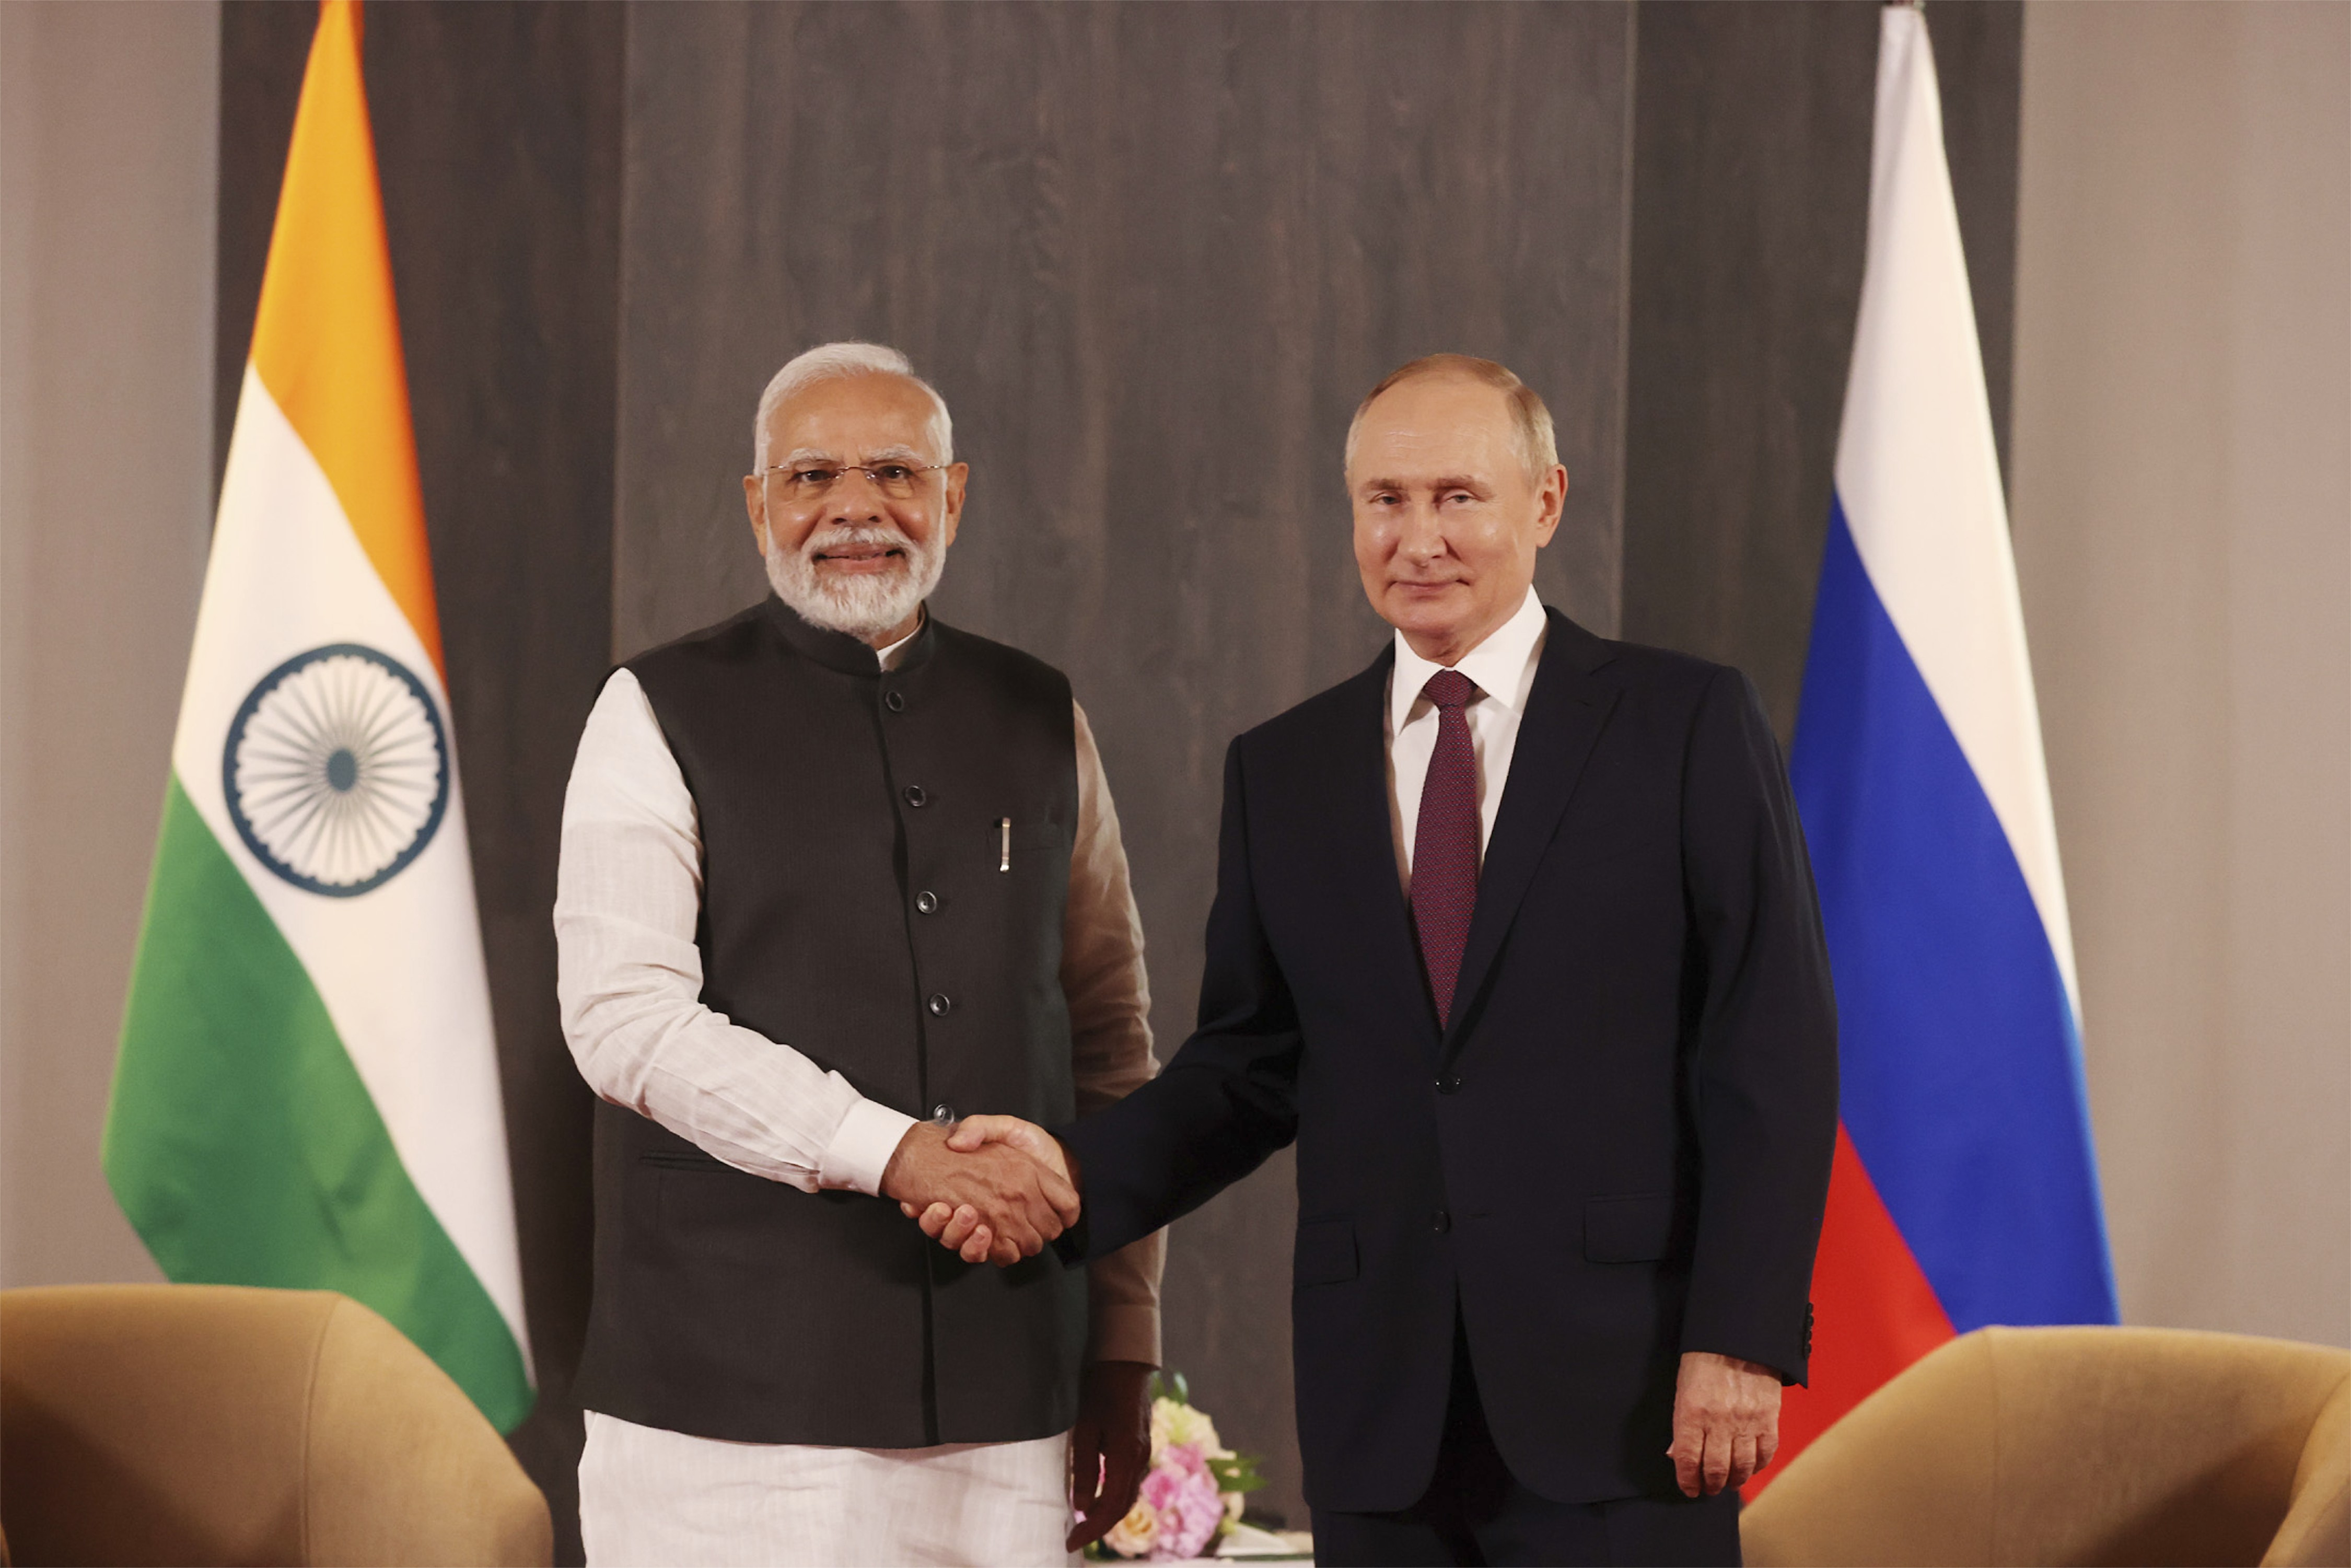 Der indische Premierminister Narendra Modi zusammen mit dem russischen Präsidenten Wladimir Putin 